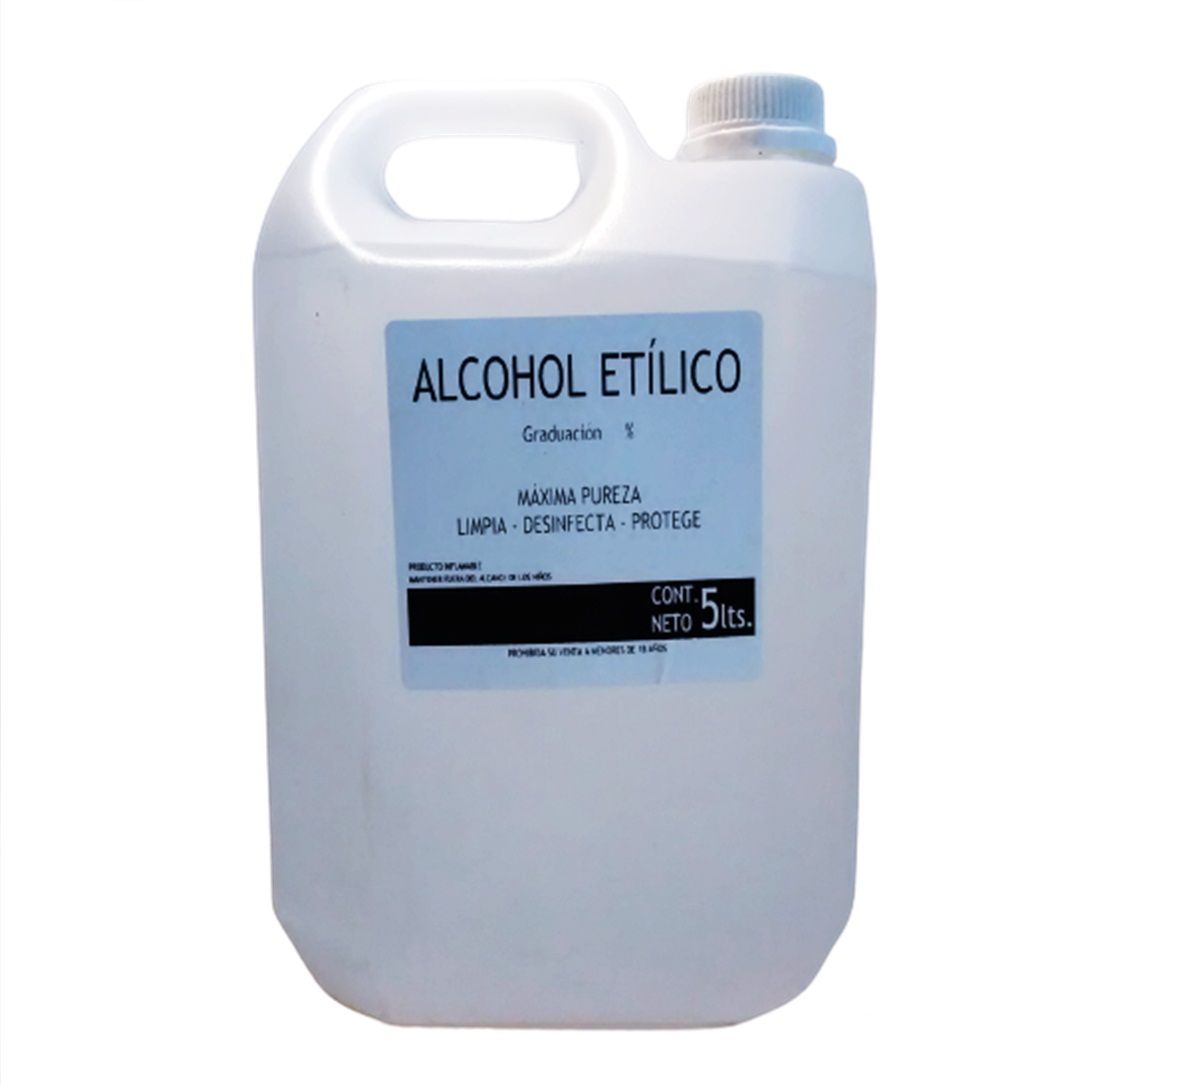 Alcohol Etilico 96% de 5 litros